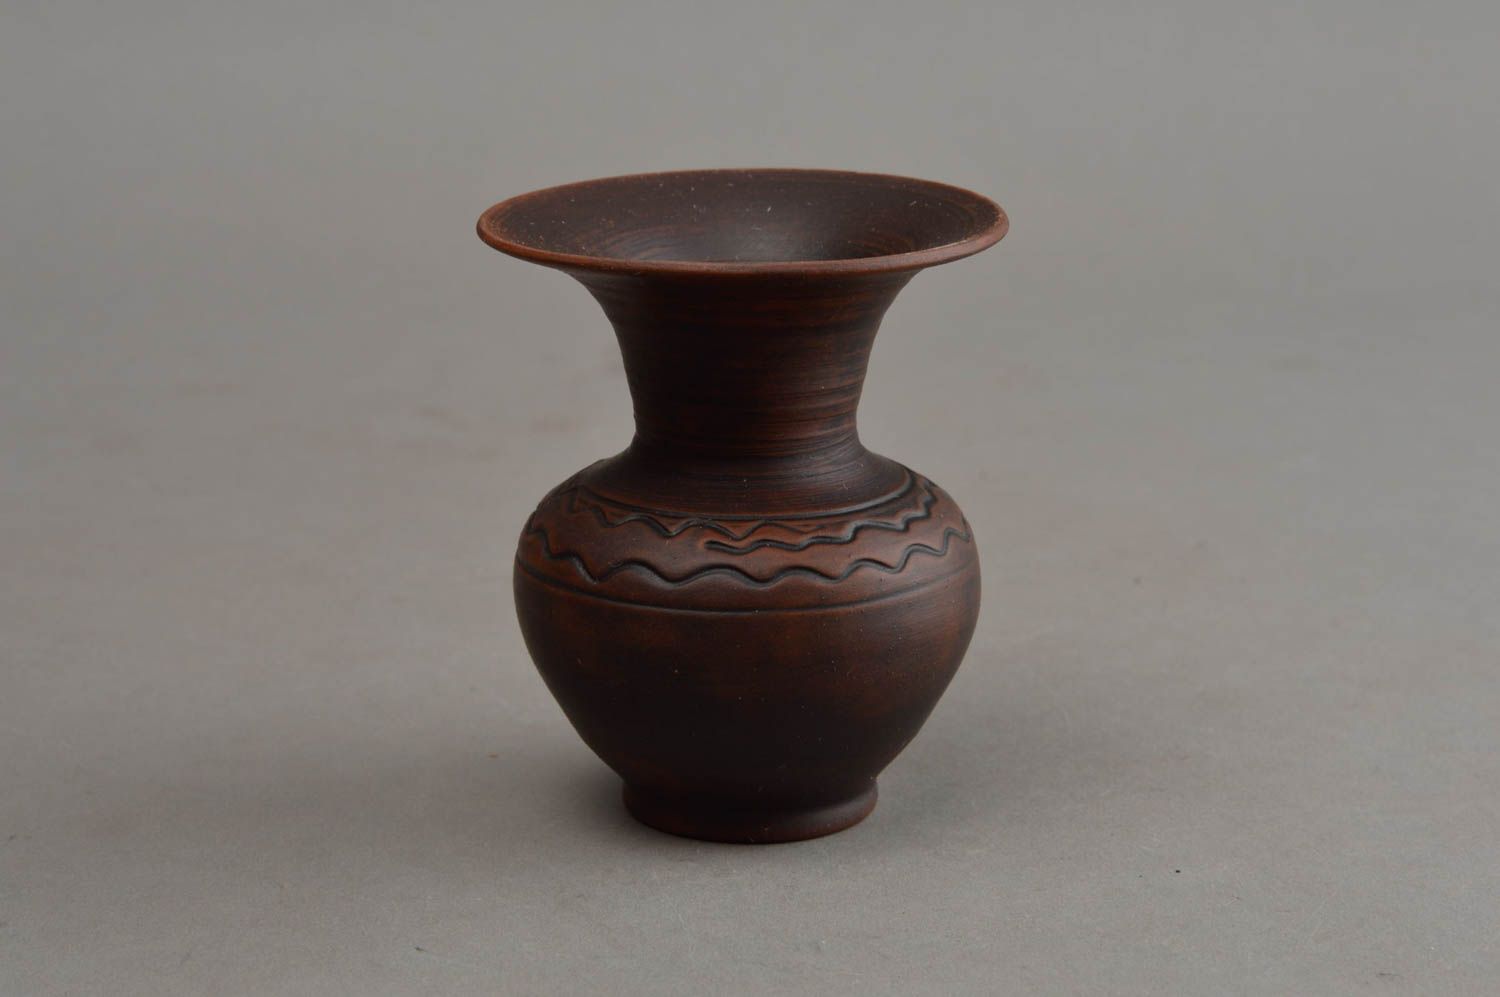 Little brown ceramic handmade flower vase for nightstand décor 3,2, 0,26 lb foto 2